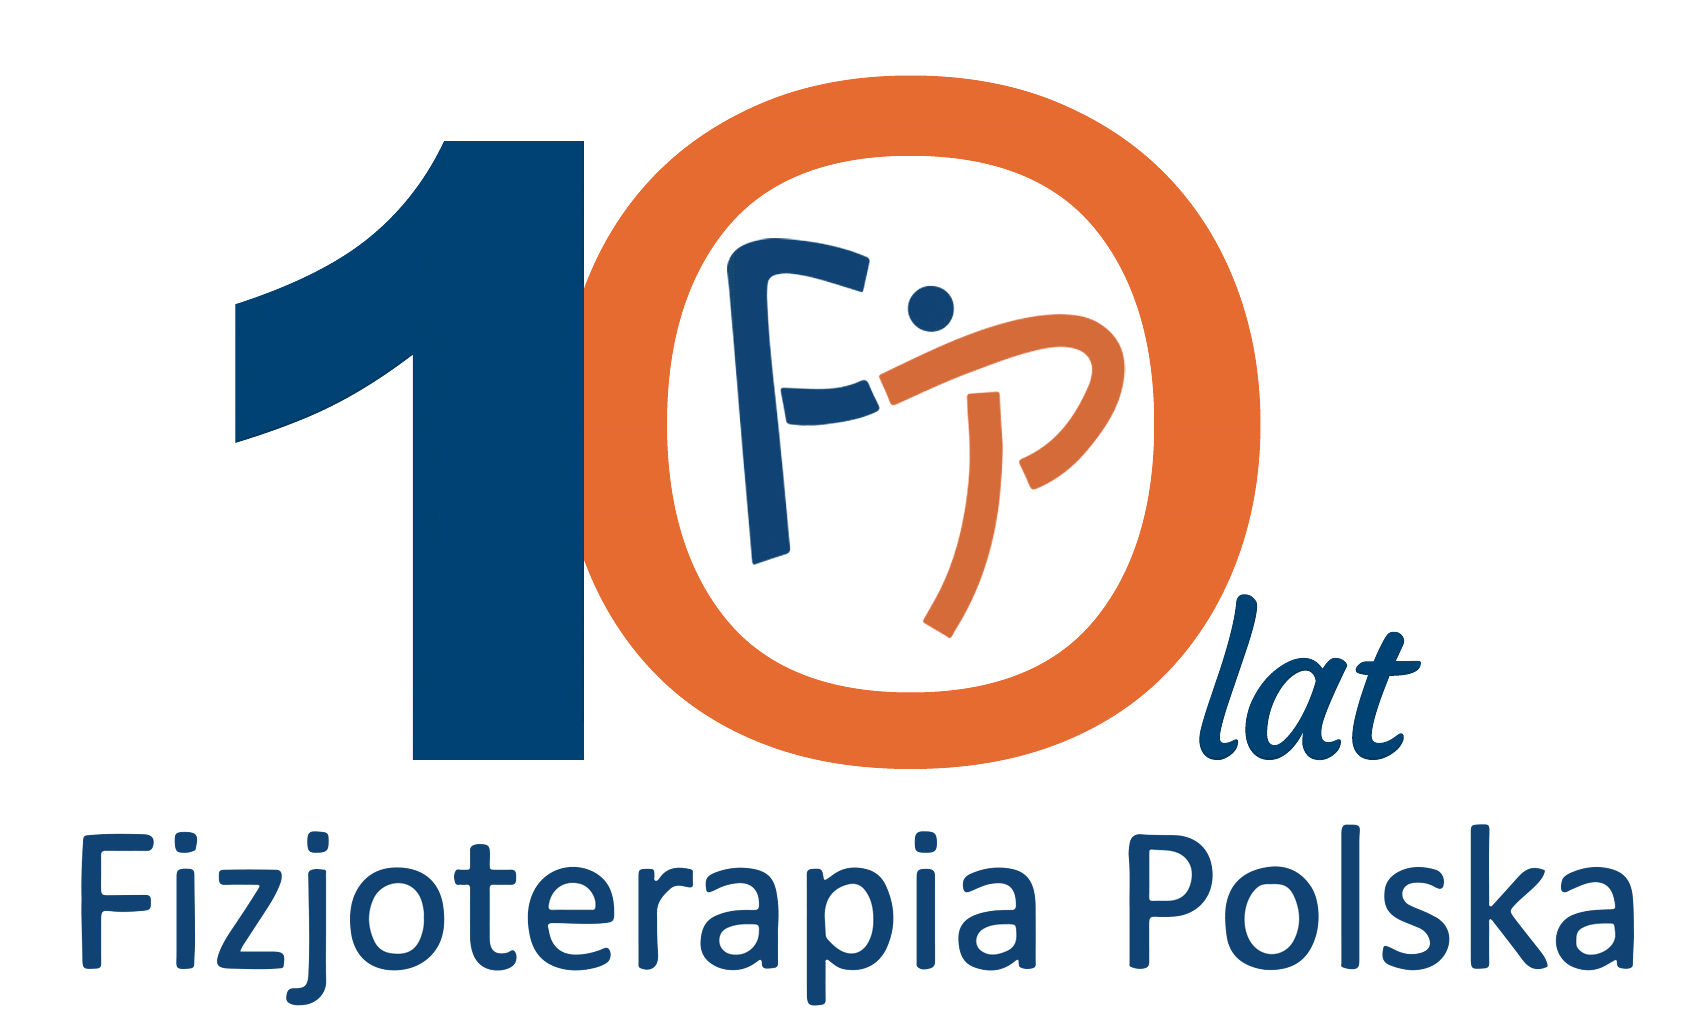 Stowarzyszenie Fizjoterapia Polska